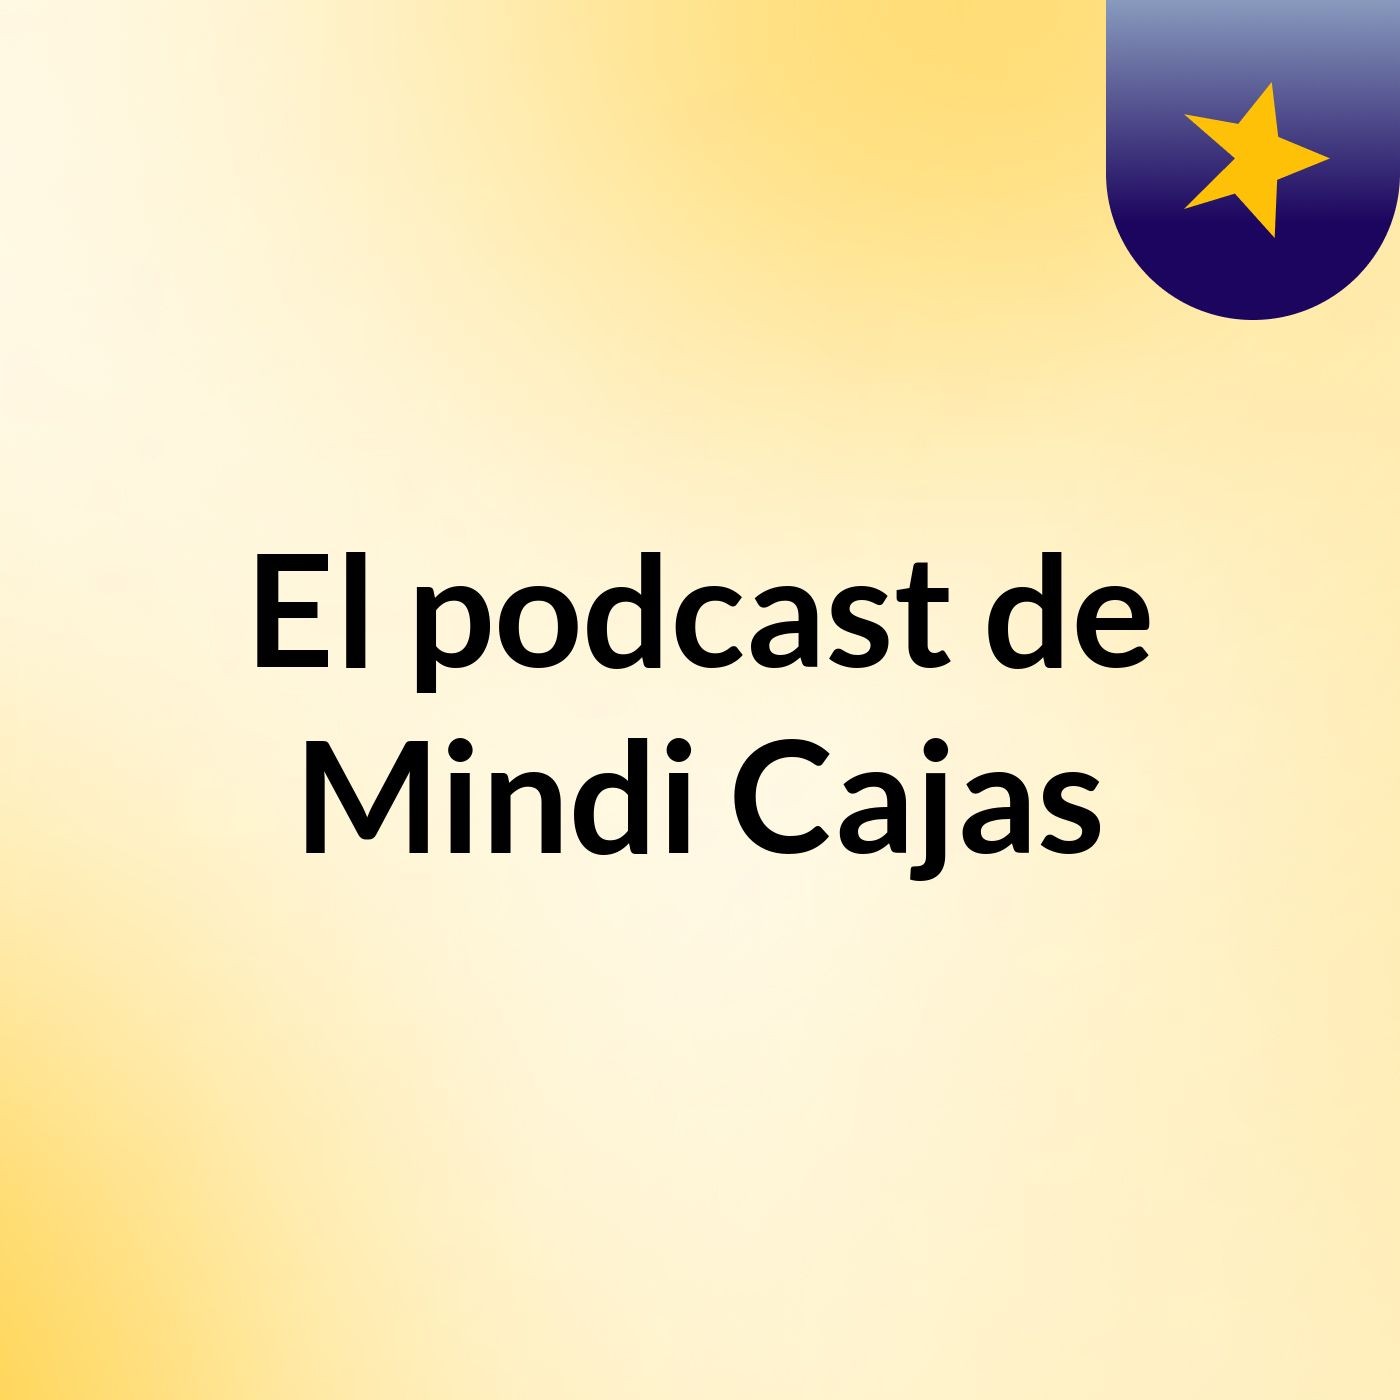 El podcast de Mindi Cajas